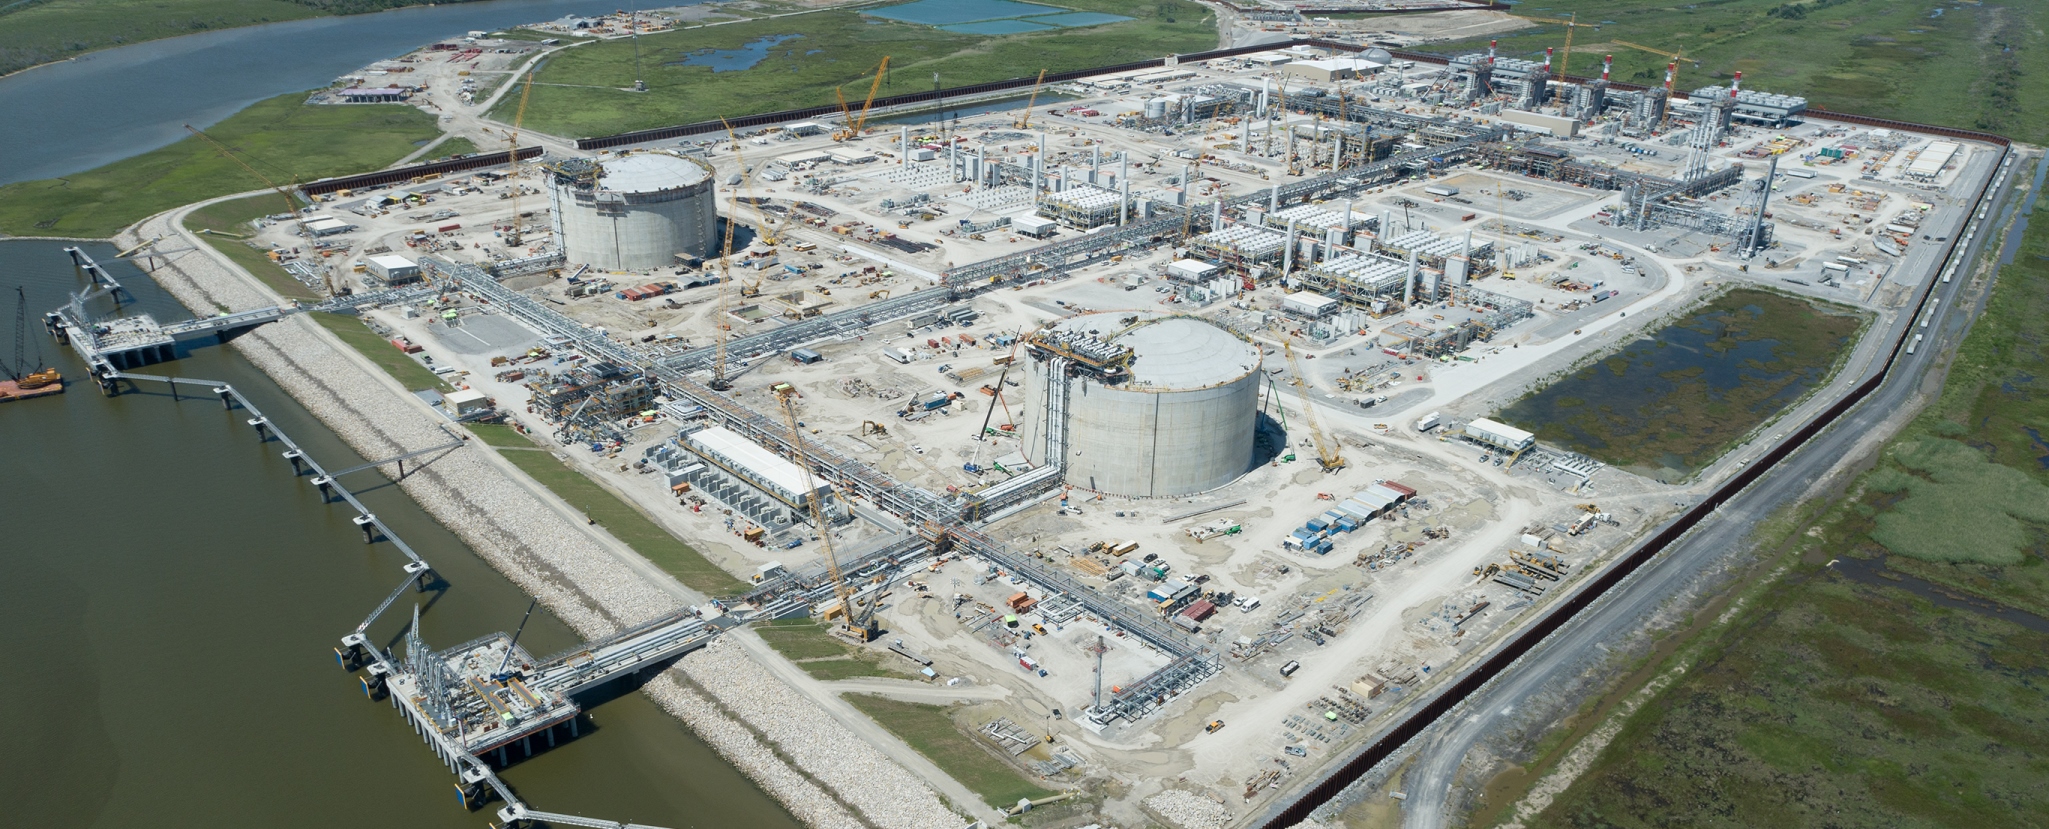 Venture Global produces first LNG at Calcasieu Pass terminal